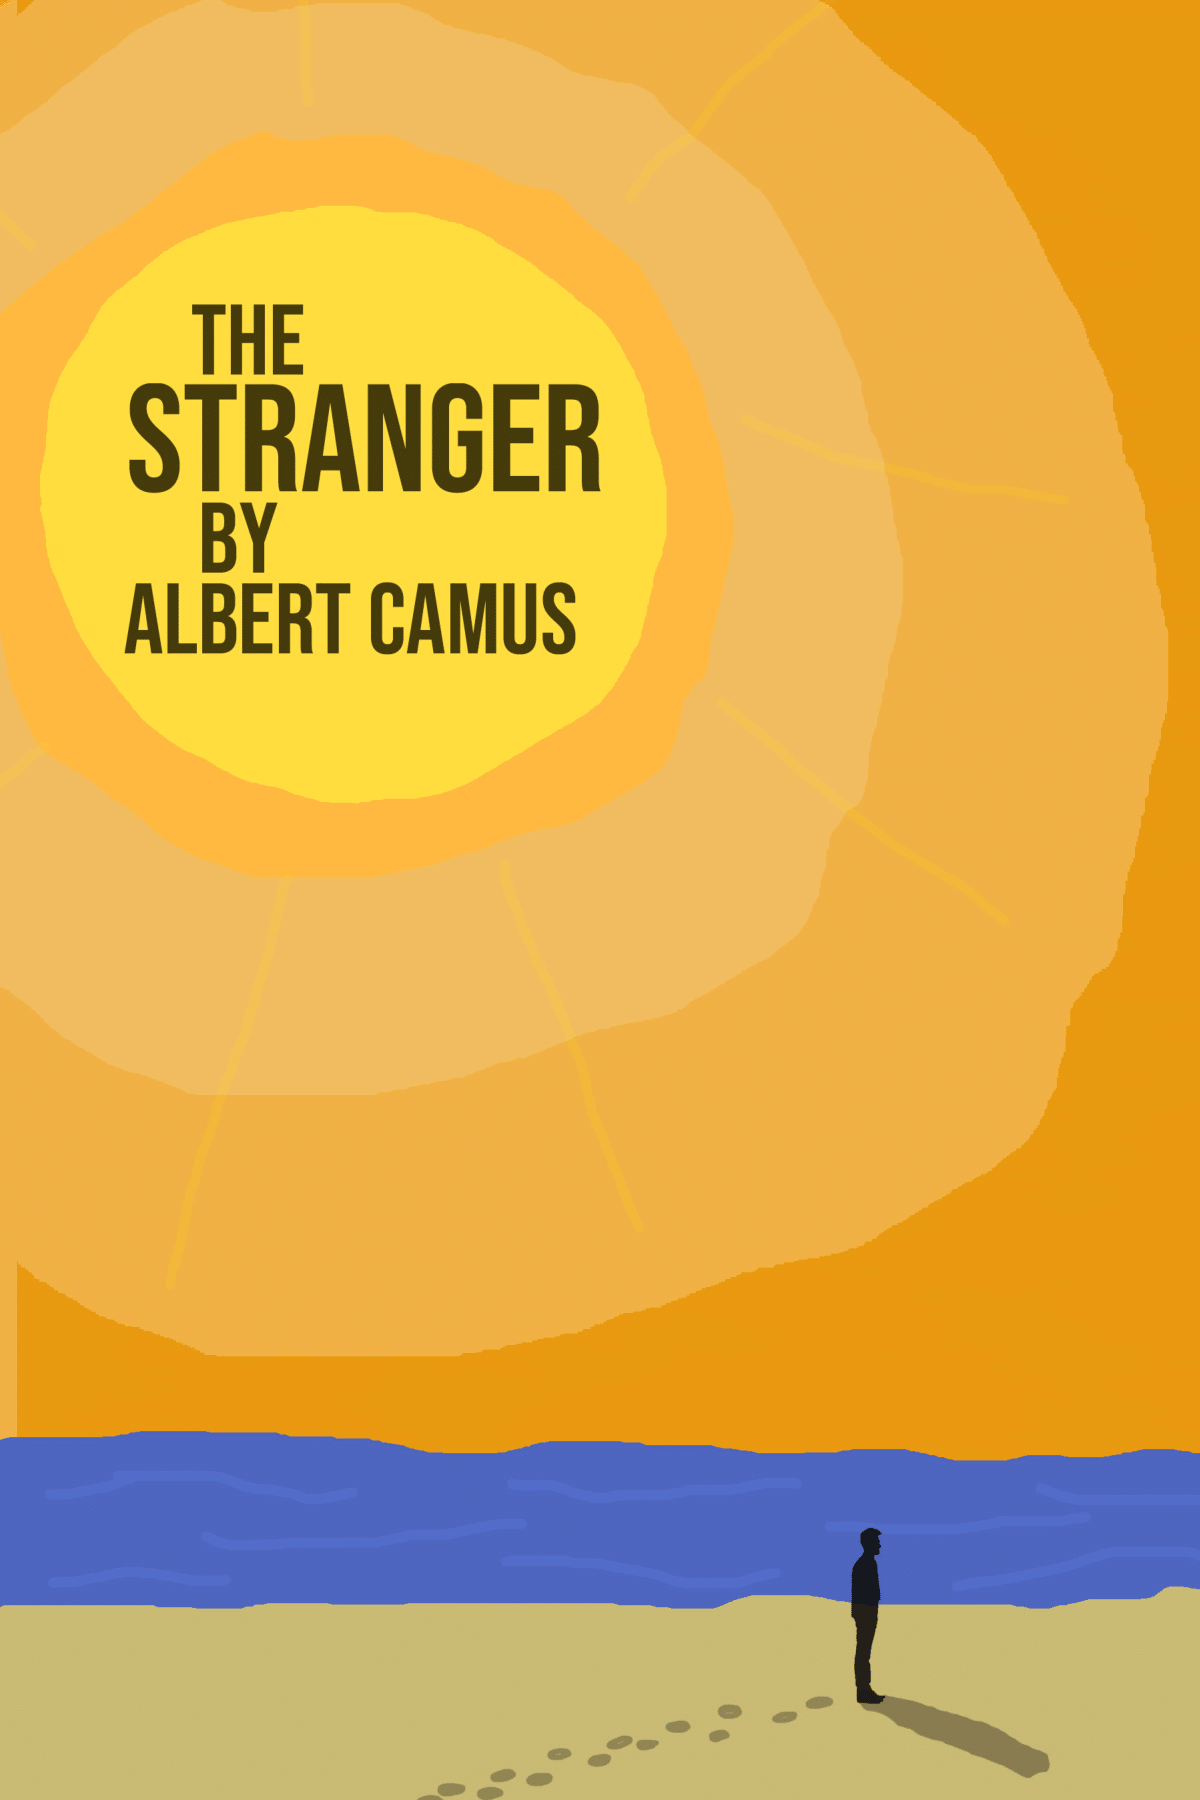 Ashir Ahmed - Albert Camus "The Stranger" Alternate Cover